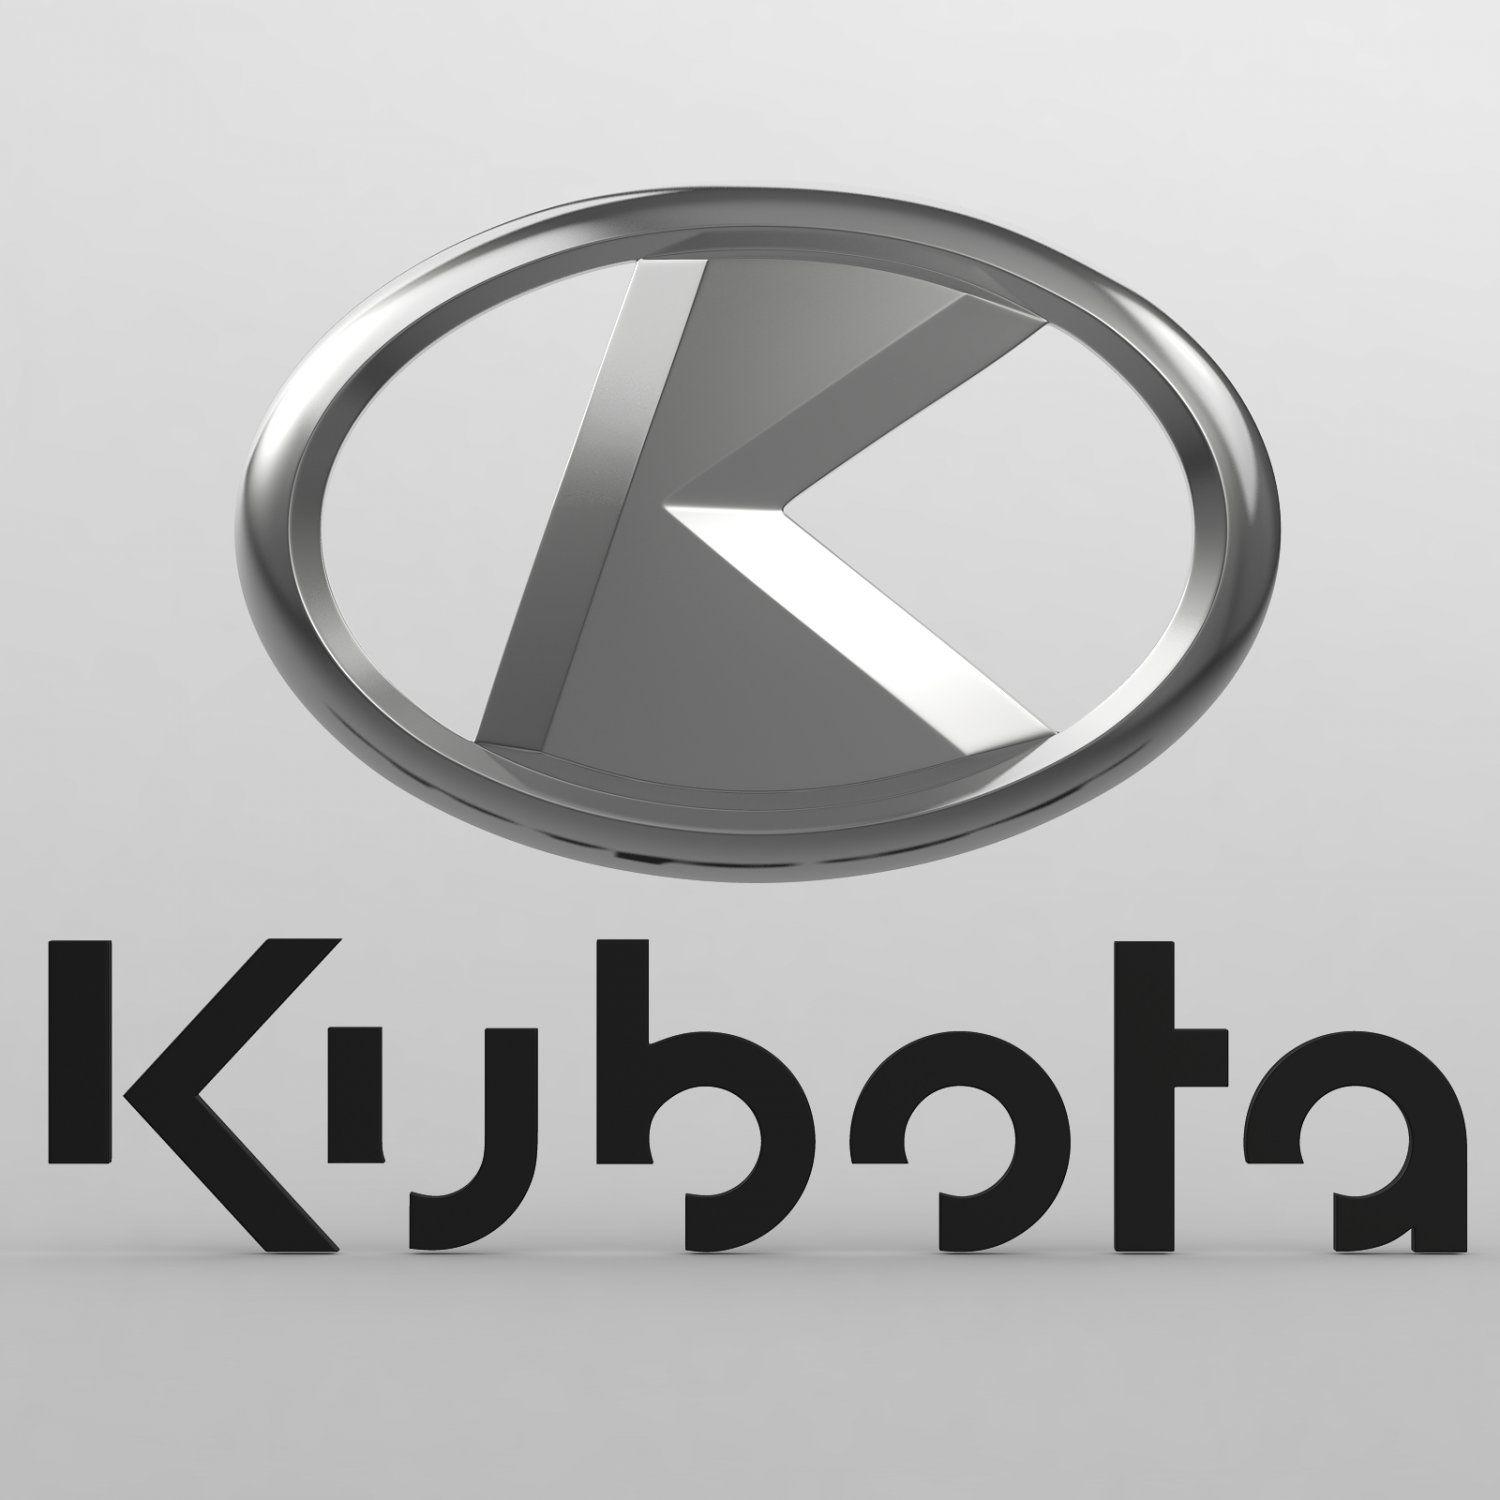 Motor City Kubota – Kubota Equipment